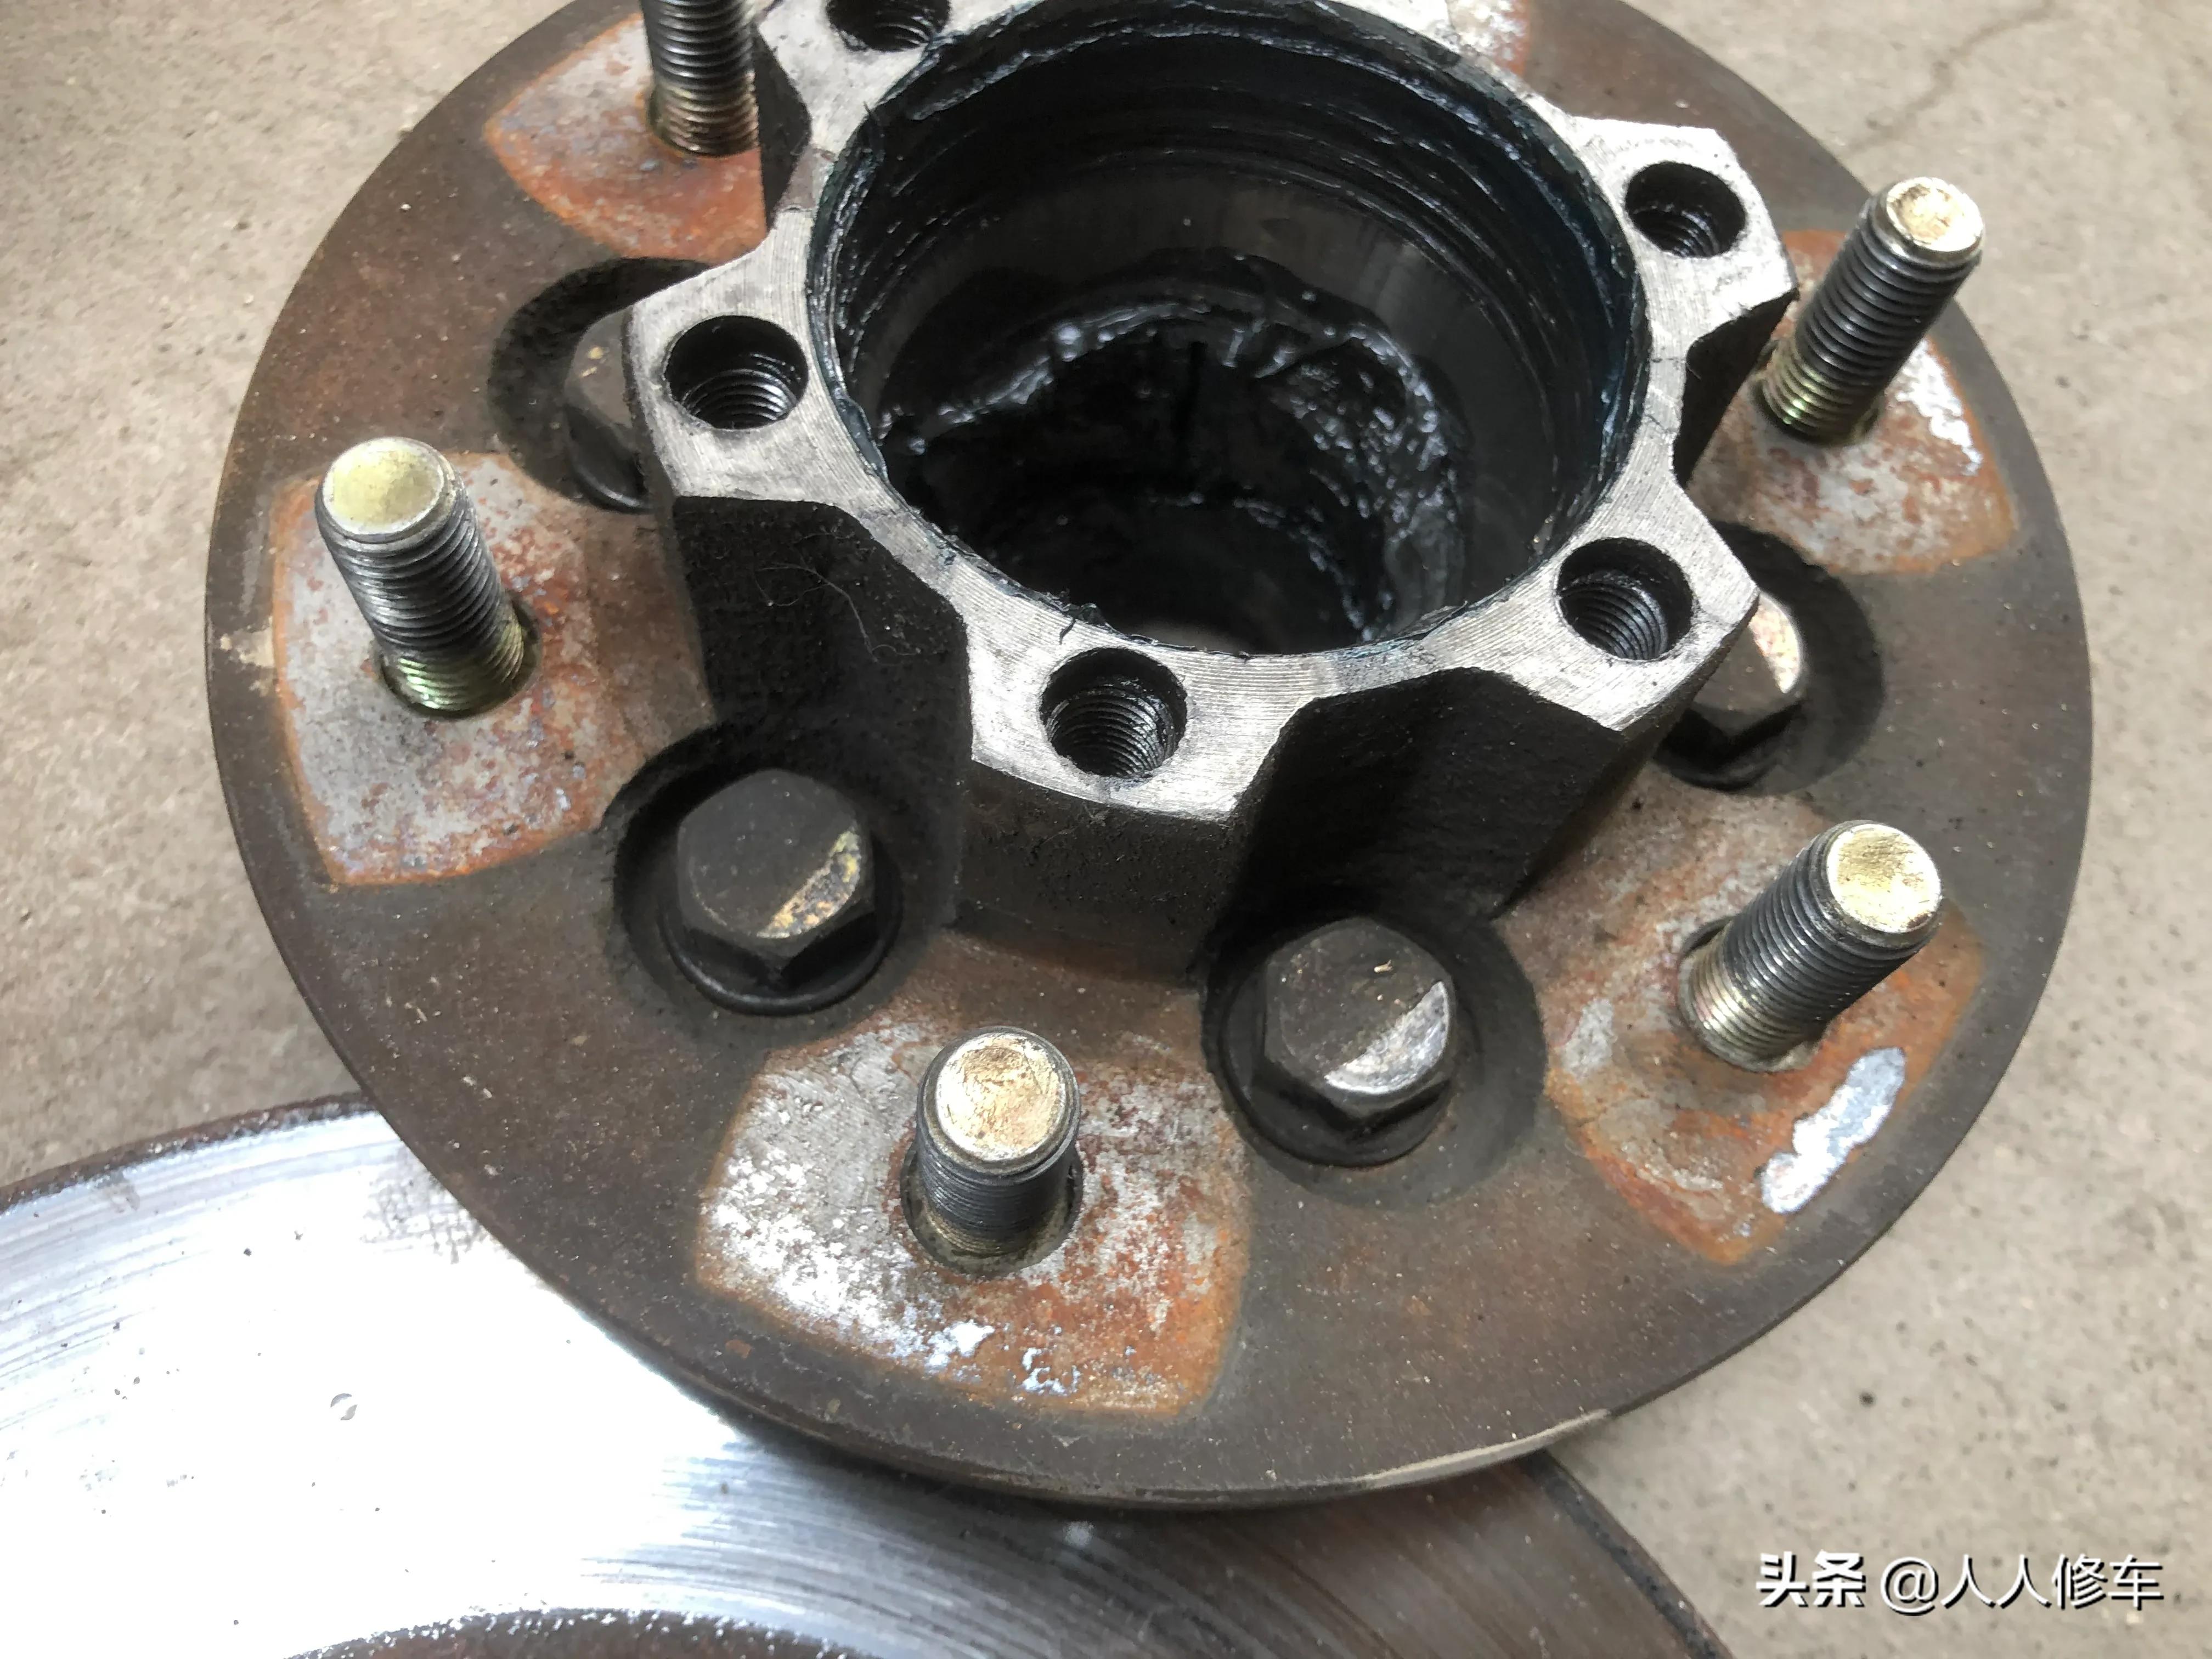 汽车车轮轴承需要定期上油保养吗？该如何做呢？